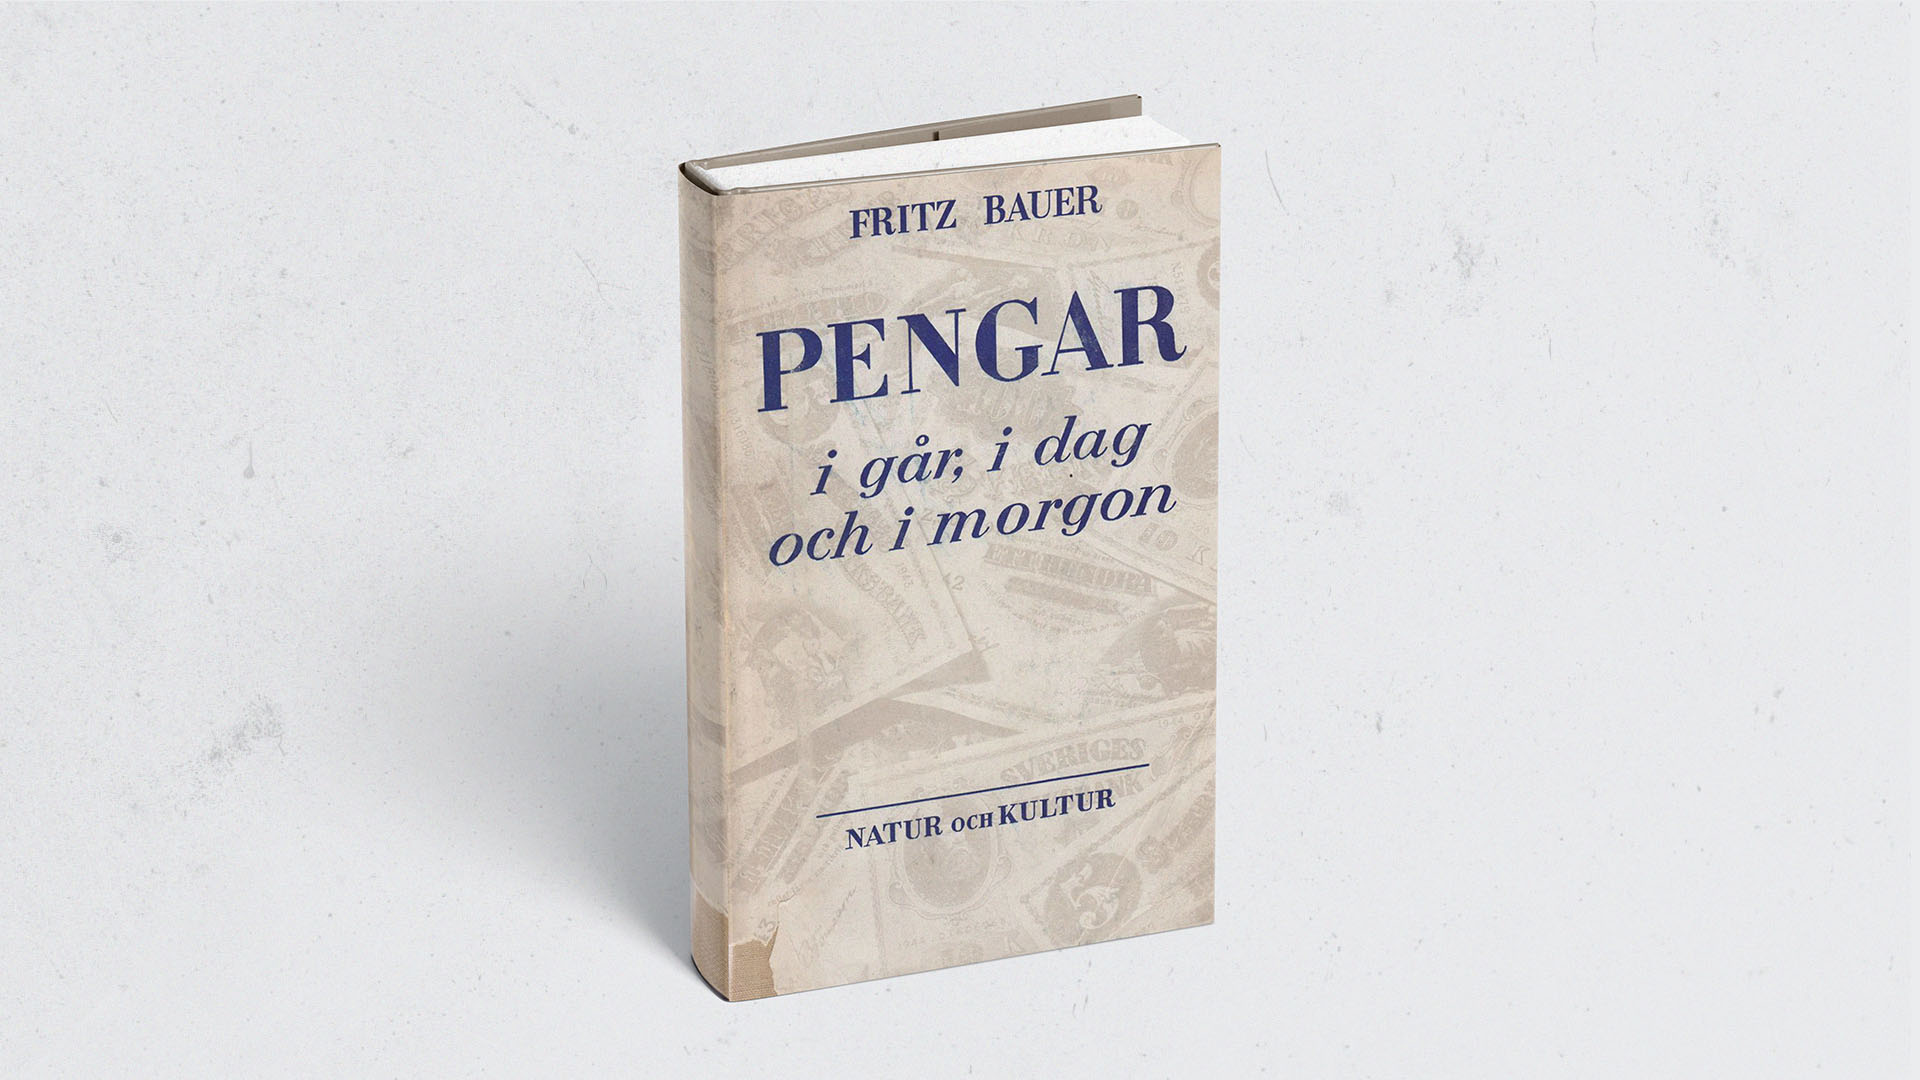 Fritz Bauer's Schriften Pengar